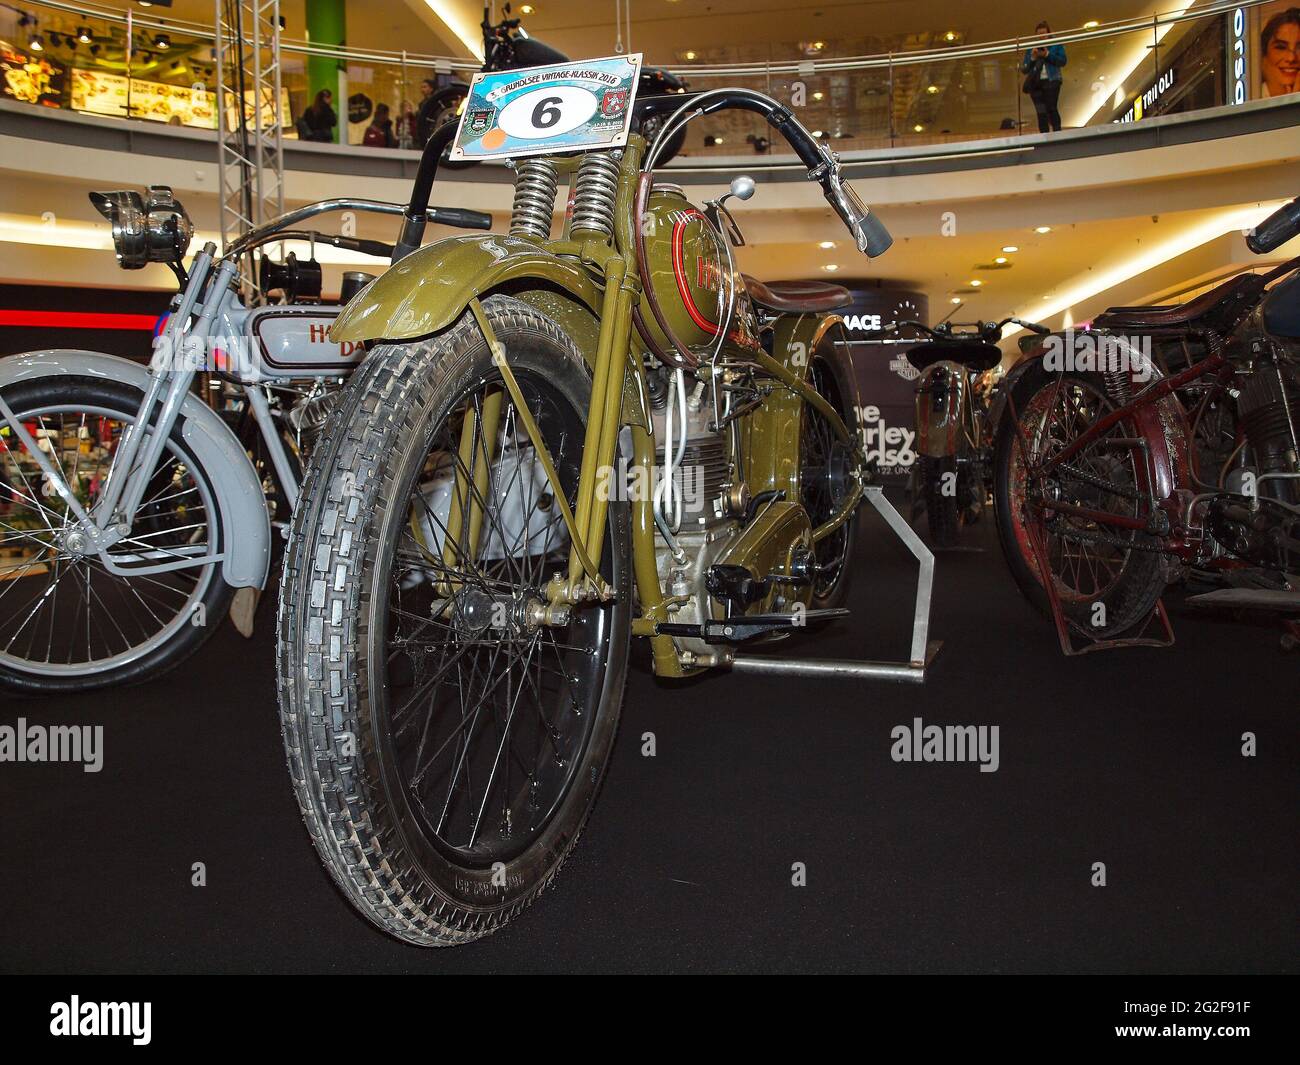 BRNO, REPUBBLICA CECA - 20 febbraio 2020: Mostra di moto harley davidson attuali e storici nella galleria Vankovka di Brno. Foto Stock